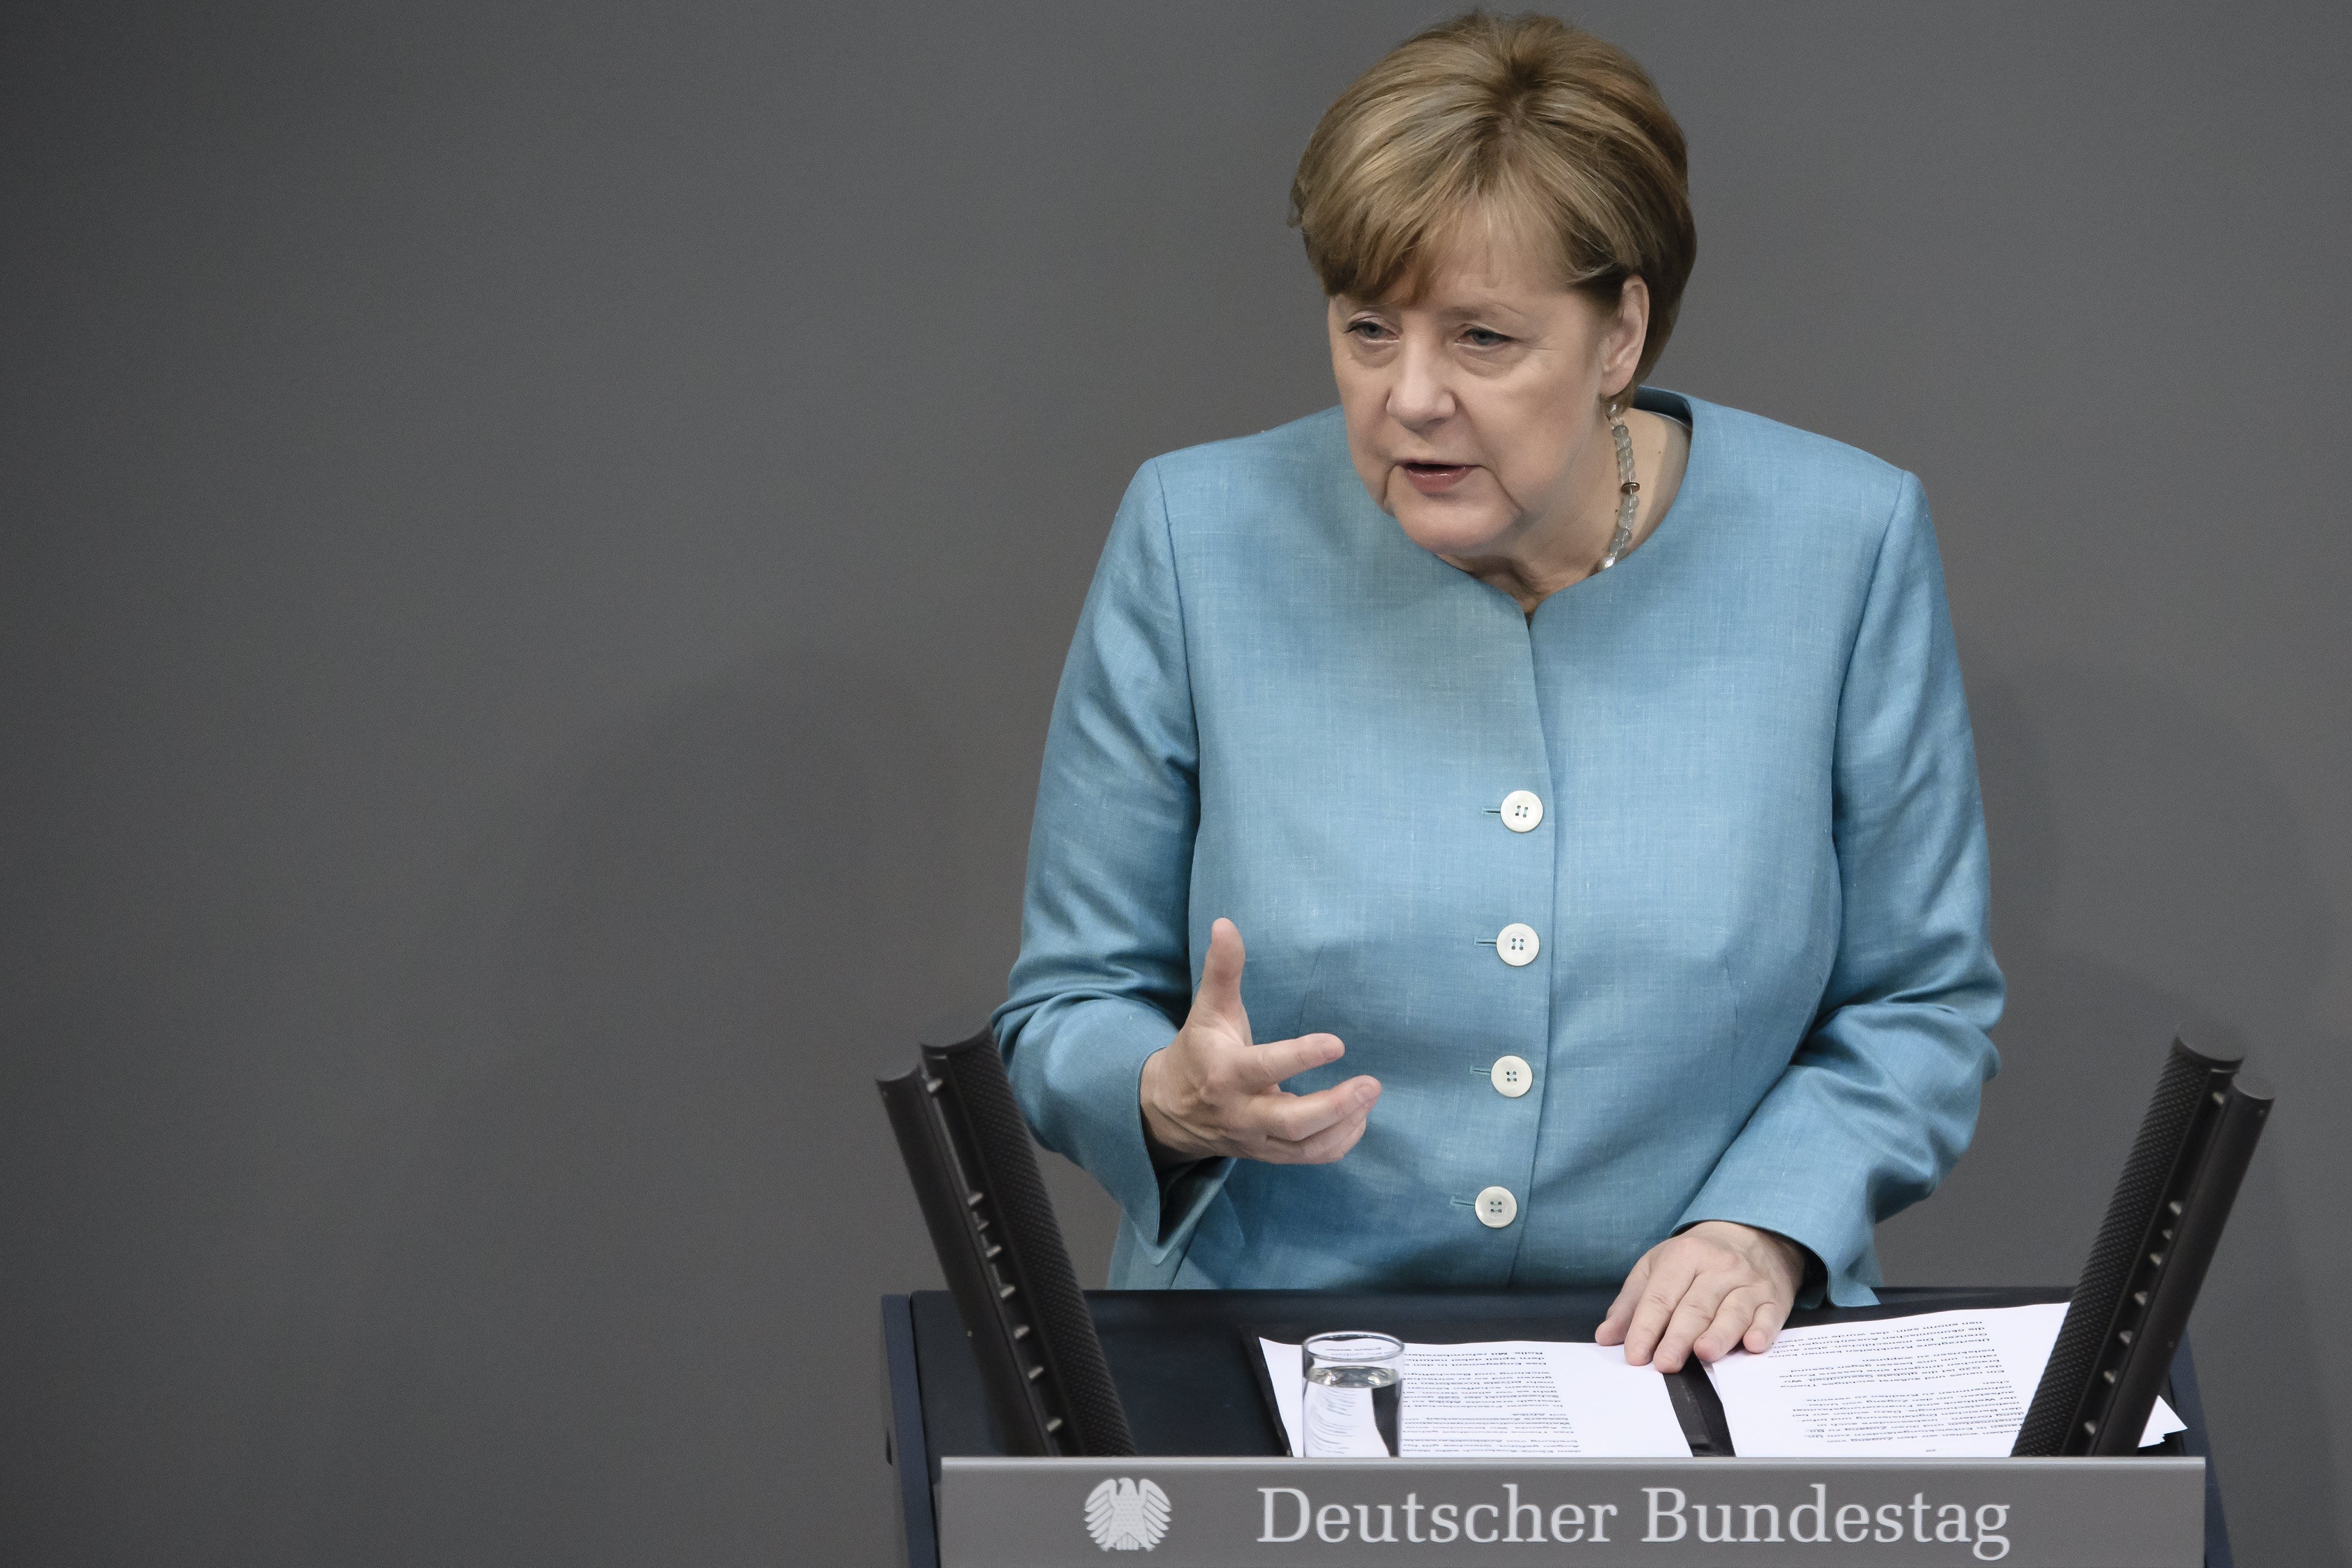 Merkel suspends German arm sales to Saudi Arabia